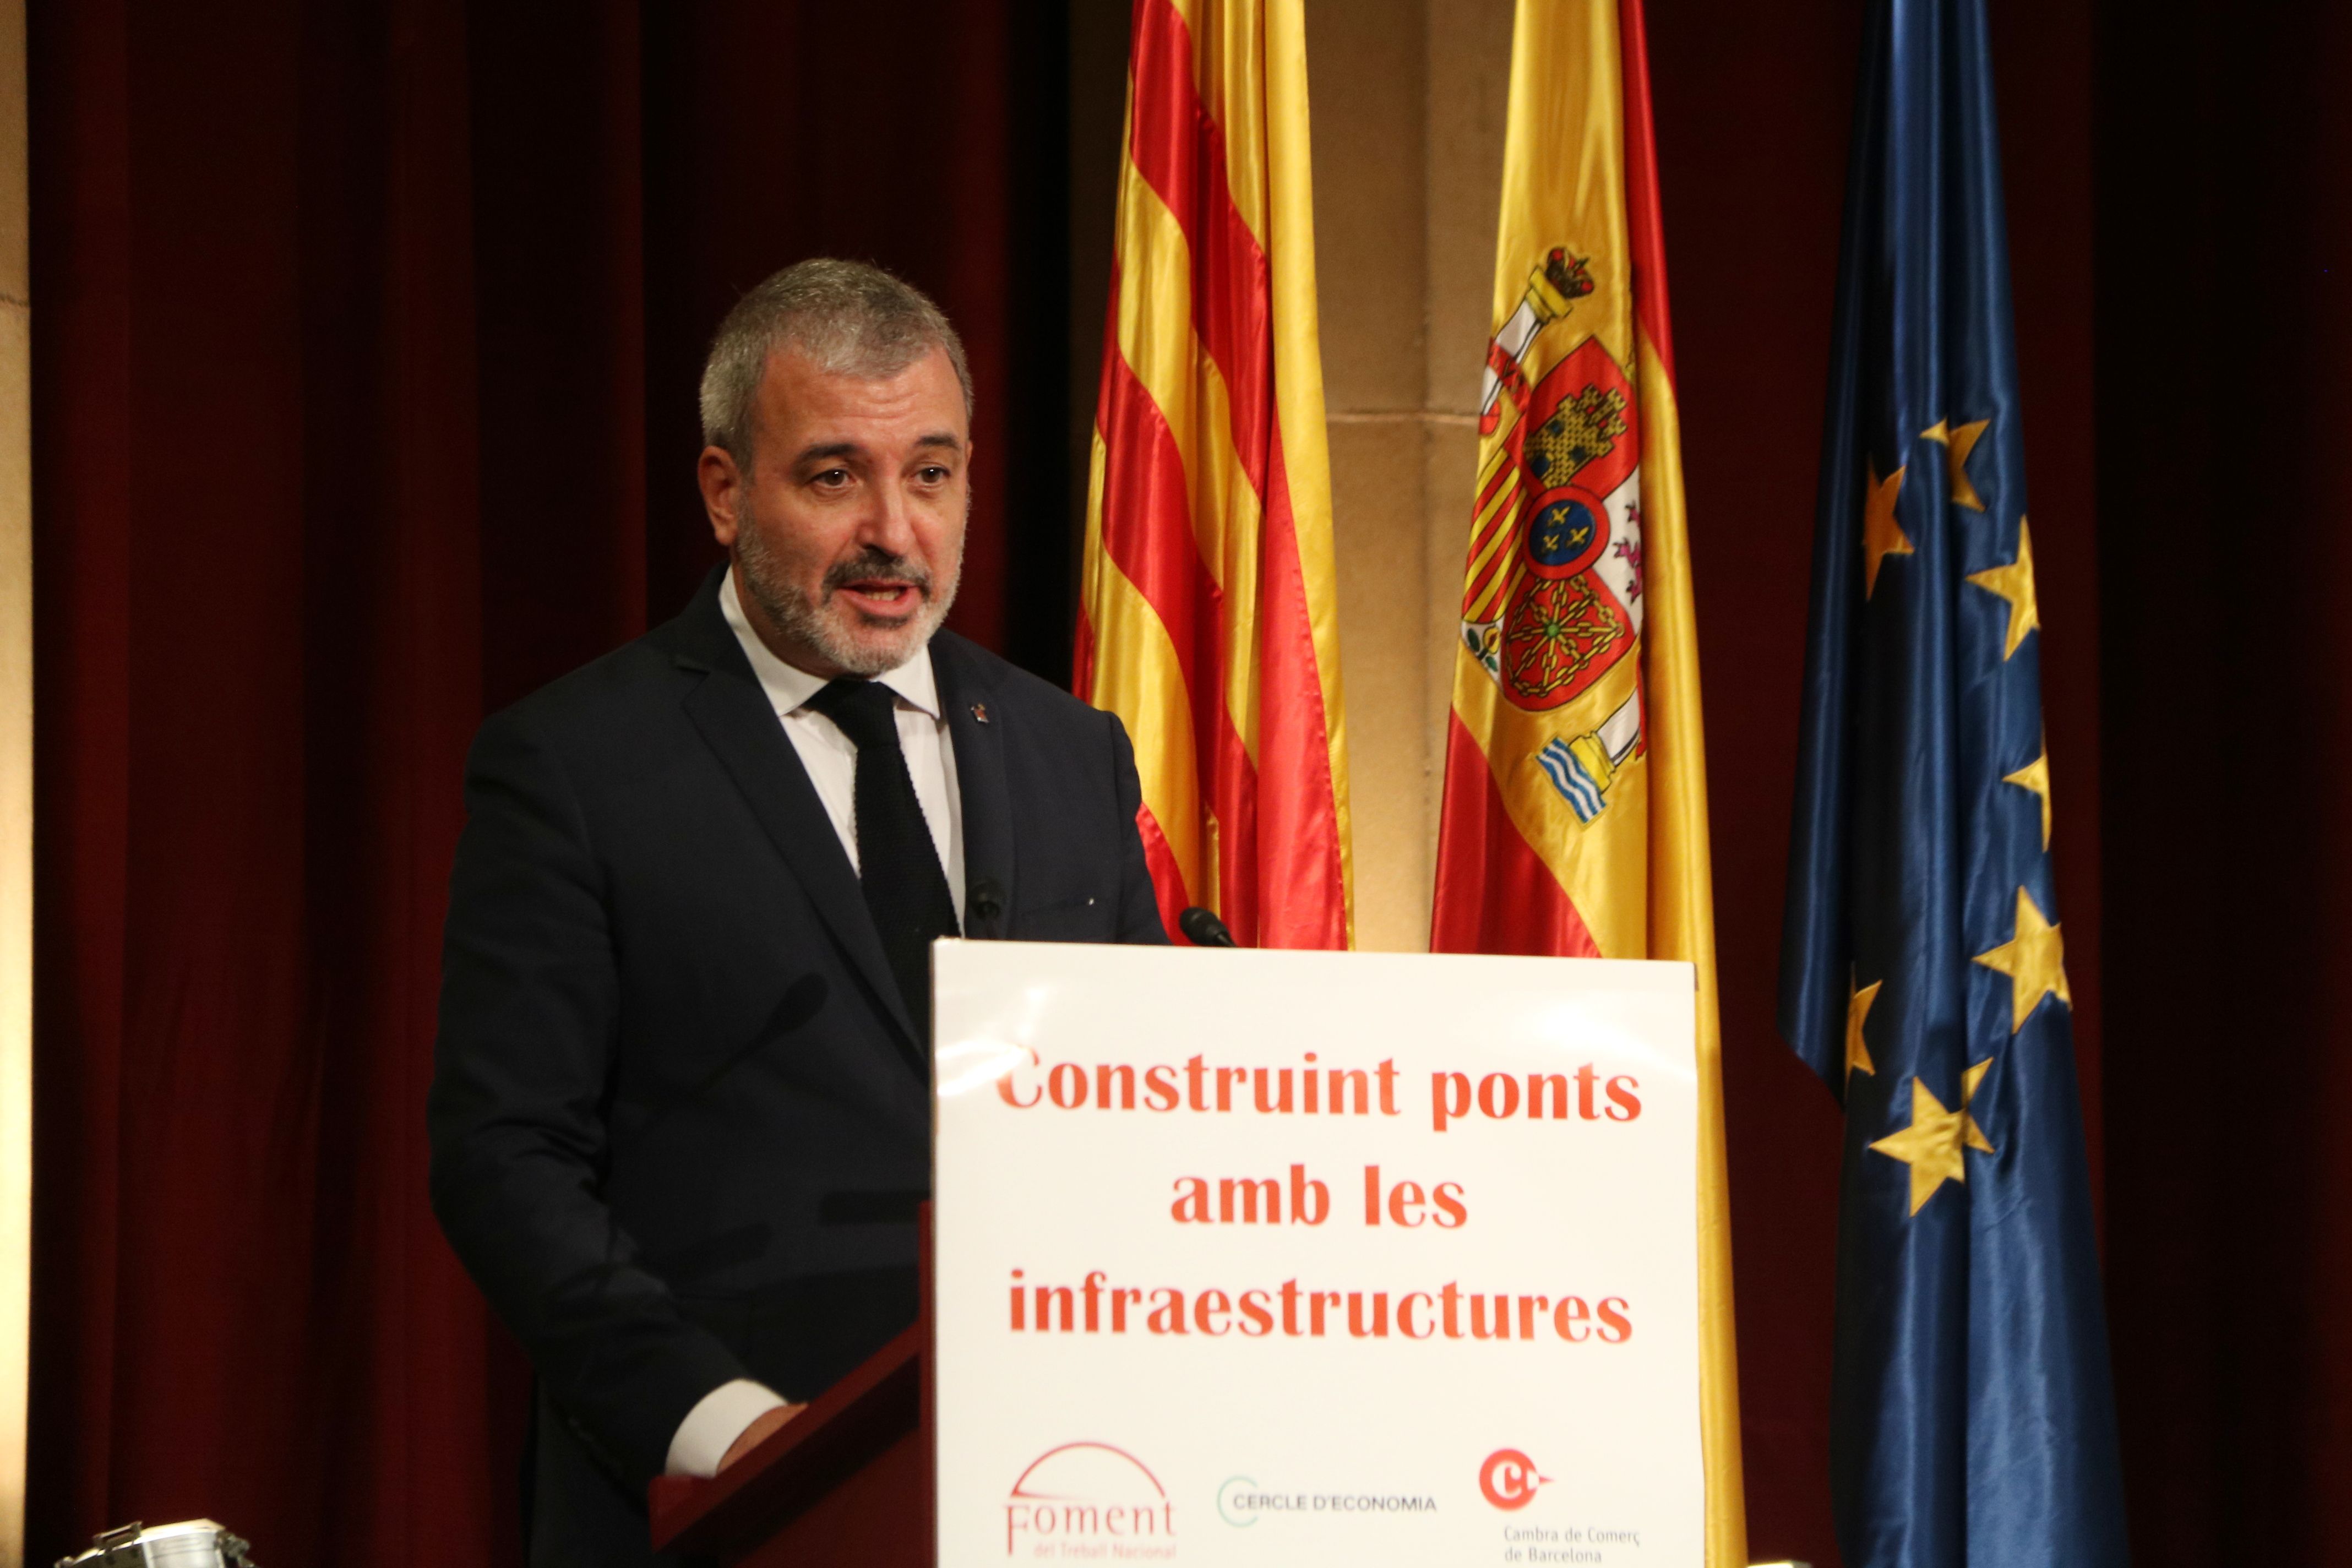 Administraciones de Barcelona se unen "salvar" la economía